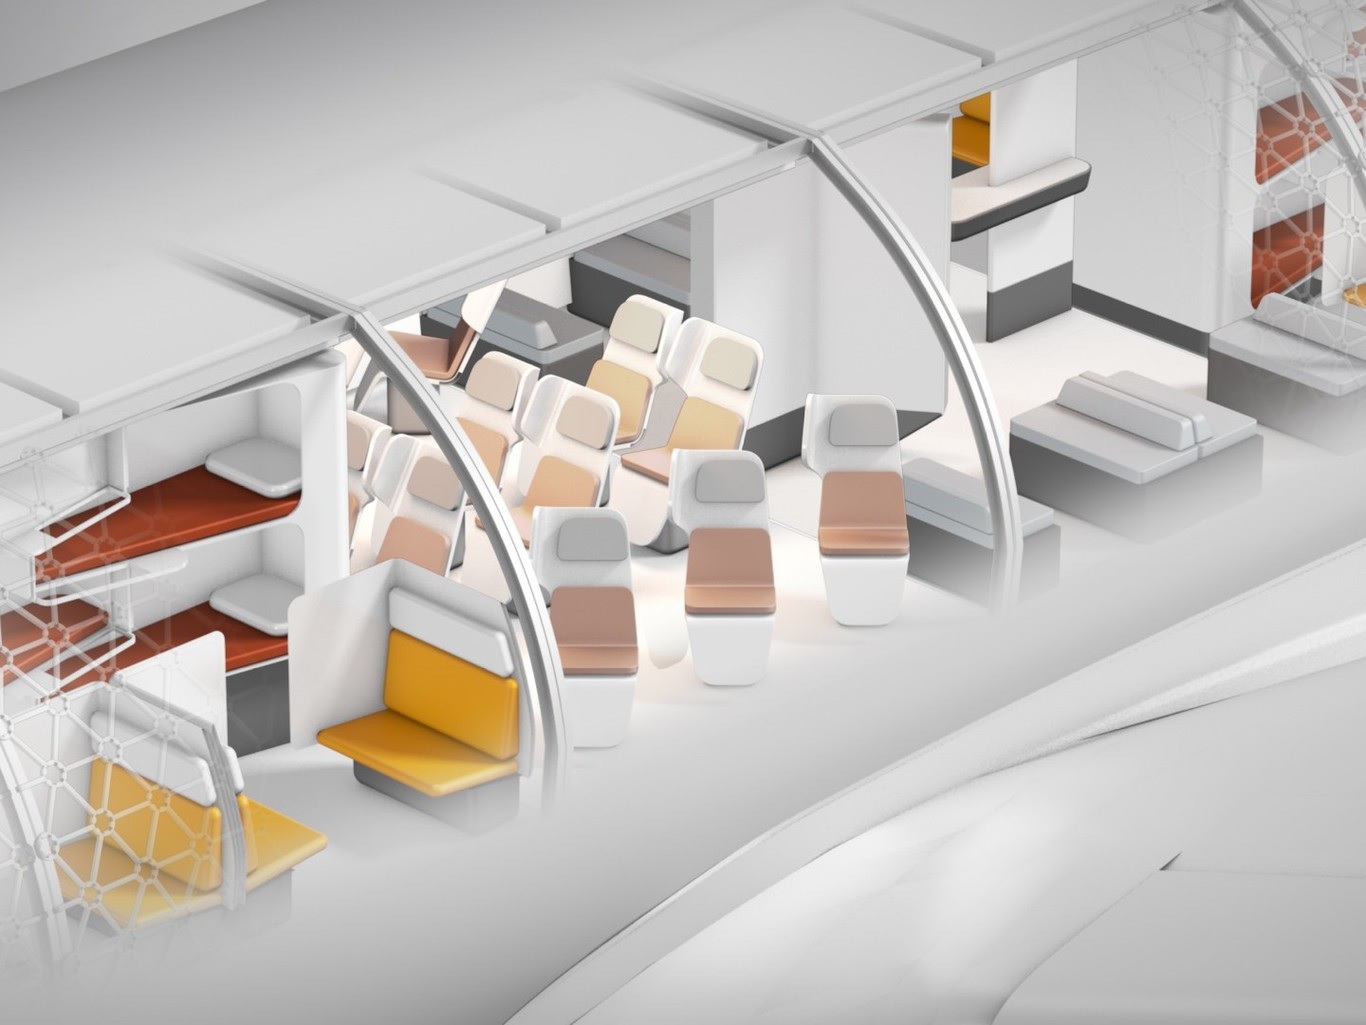 Airbus busca cambiar radicalmente la experiencia de volar con un avión modular